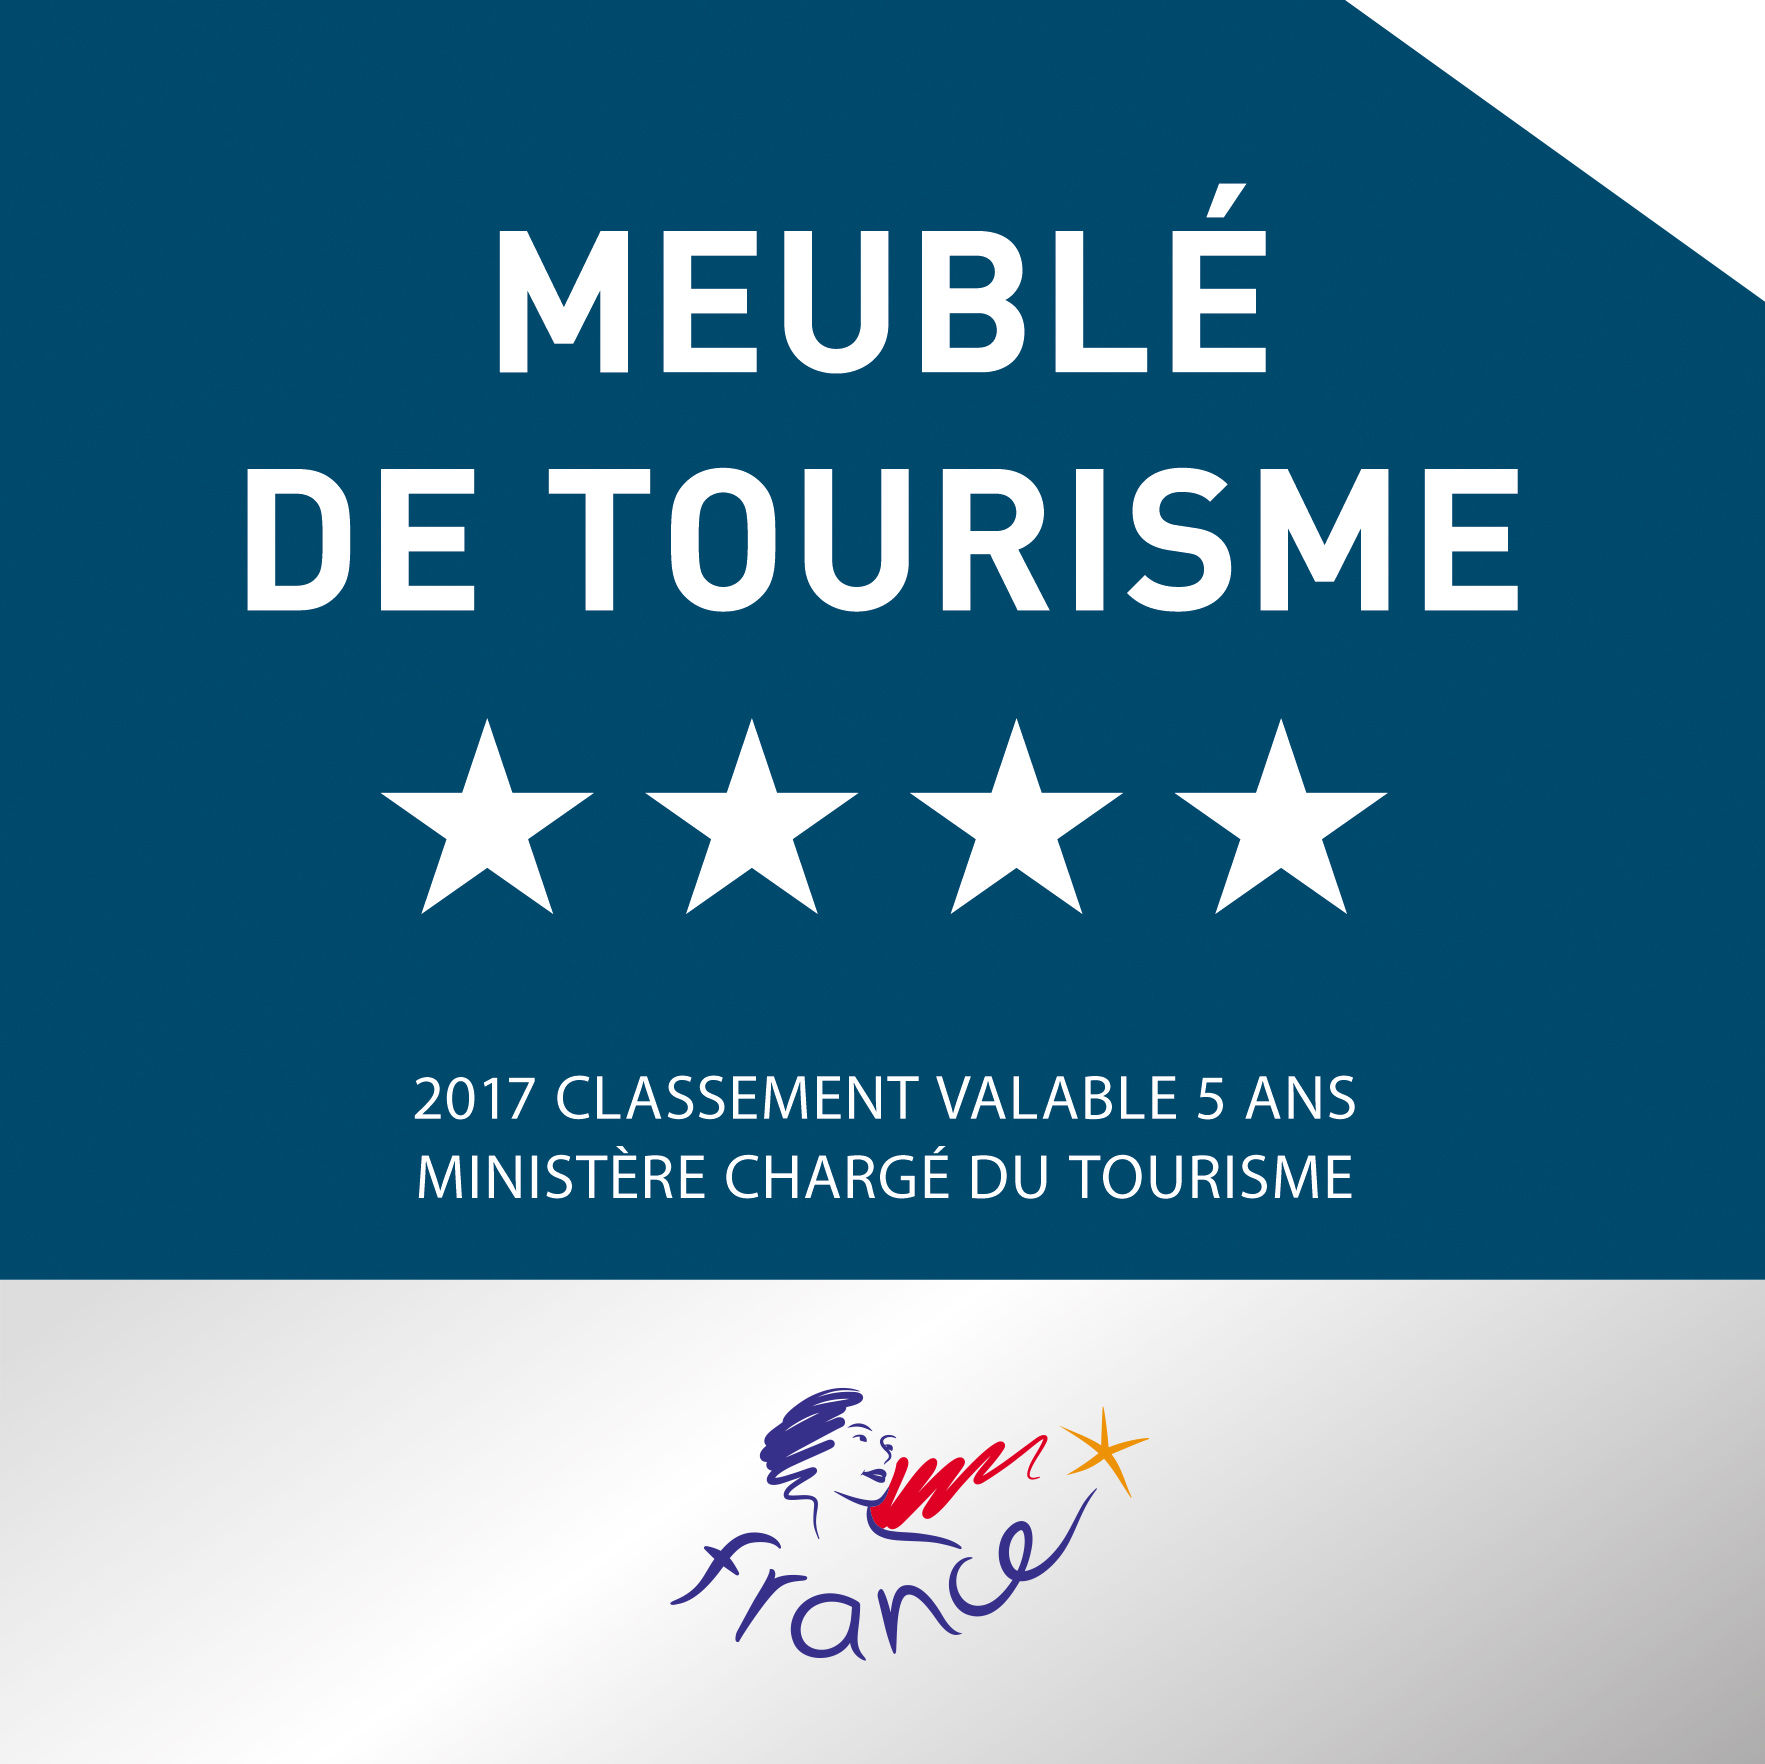 Meuble-tourisme-4-etoiles